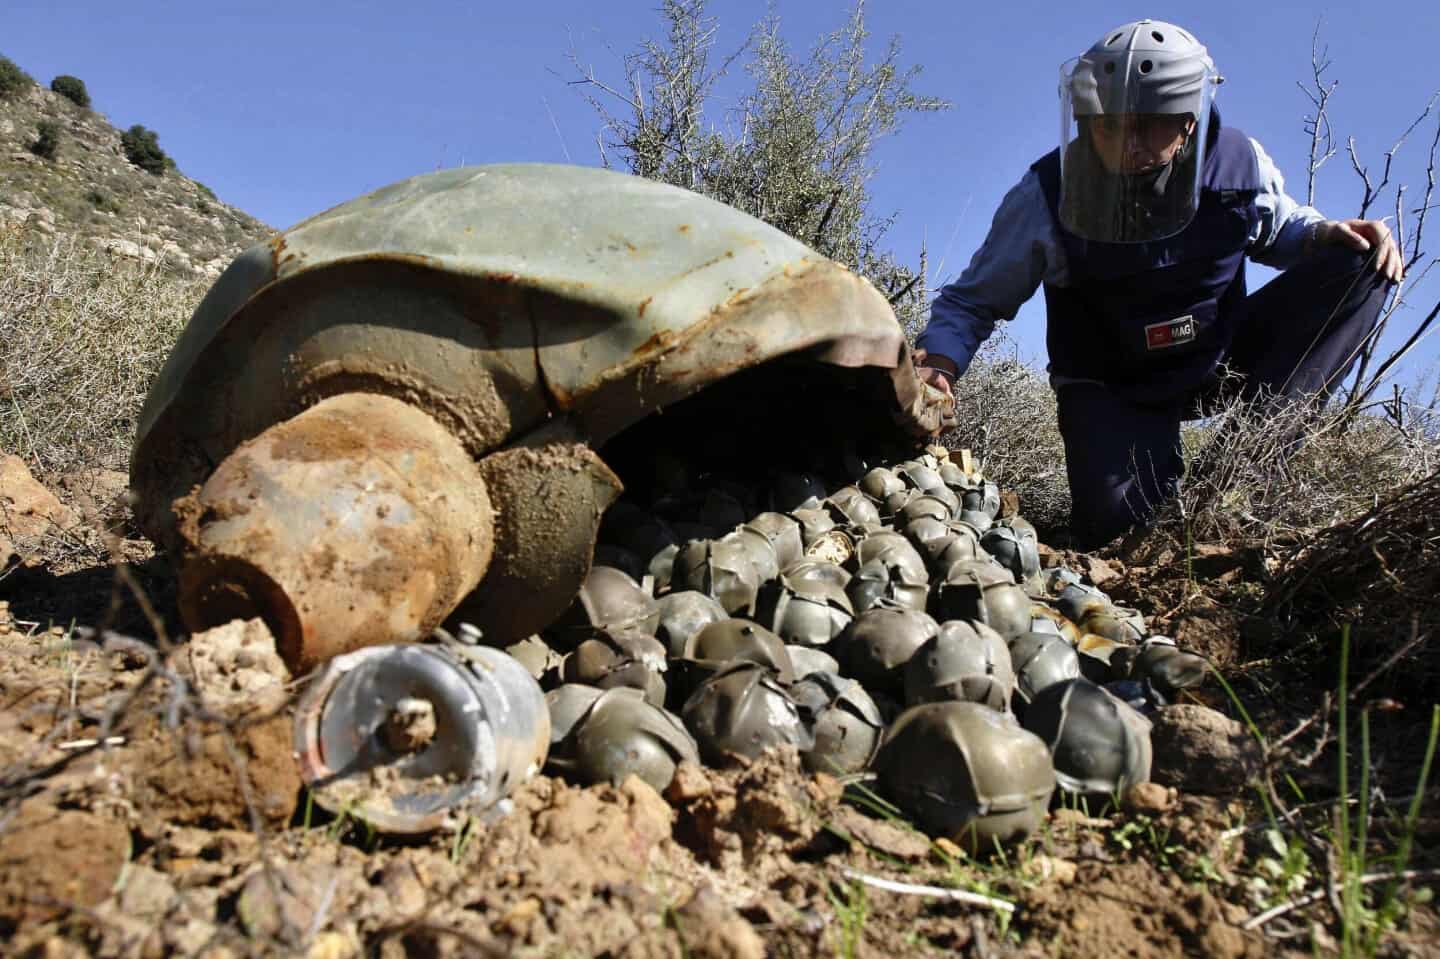 

Đạn con trong đạn chùm có thể nằm sâu dưới đất qua hàng thập kỷ (ảnh: CNN)